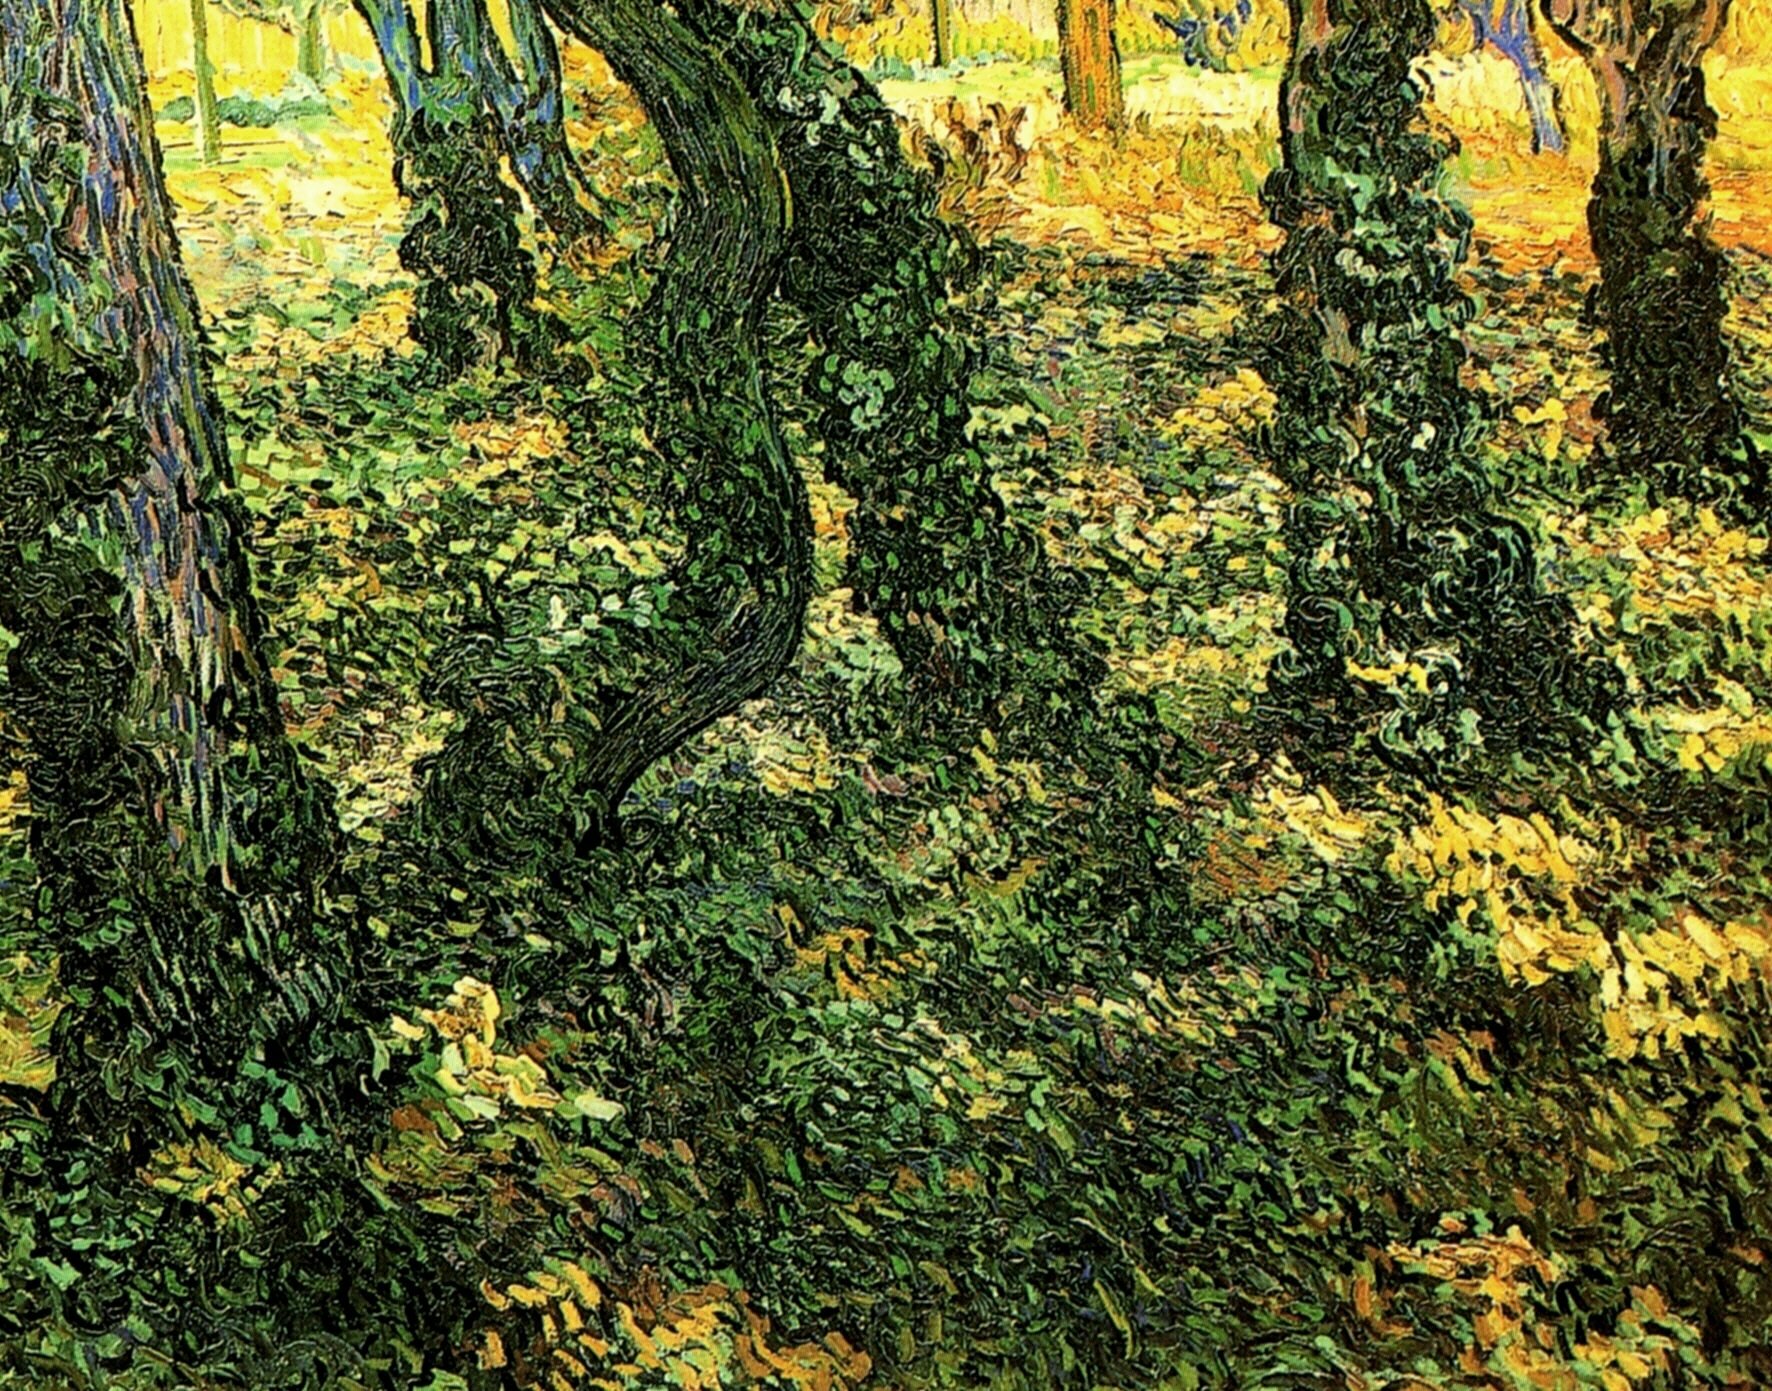  Ван Гог  Стволы деревьев с плющом